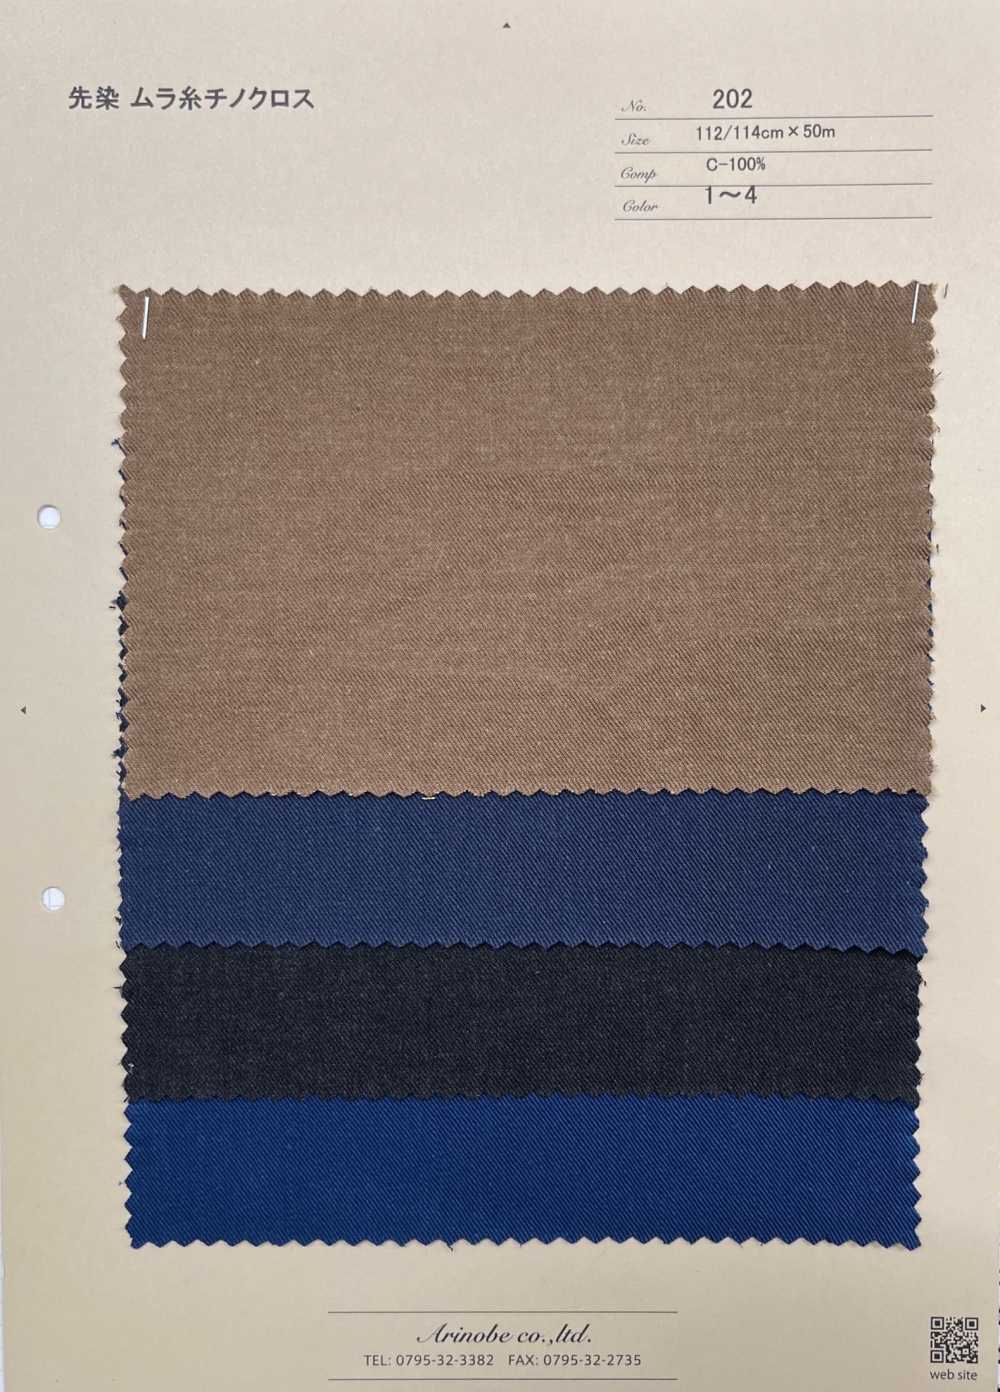 202 Garngefärbter Chino-Stoff Mit Ungleichmäßigen Fäden[Textilgewebe] ARINOBE CO., LTD.